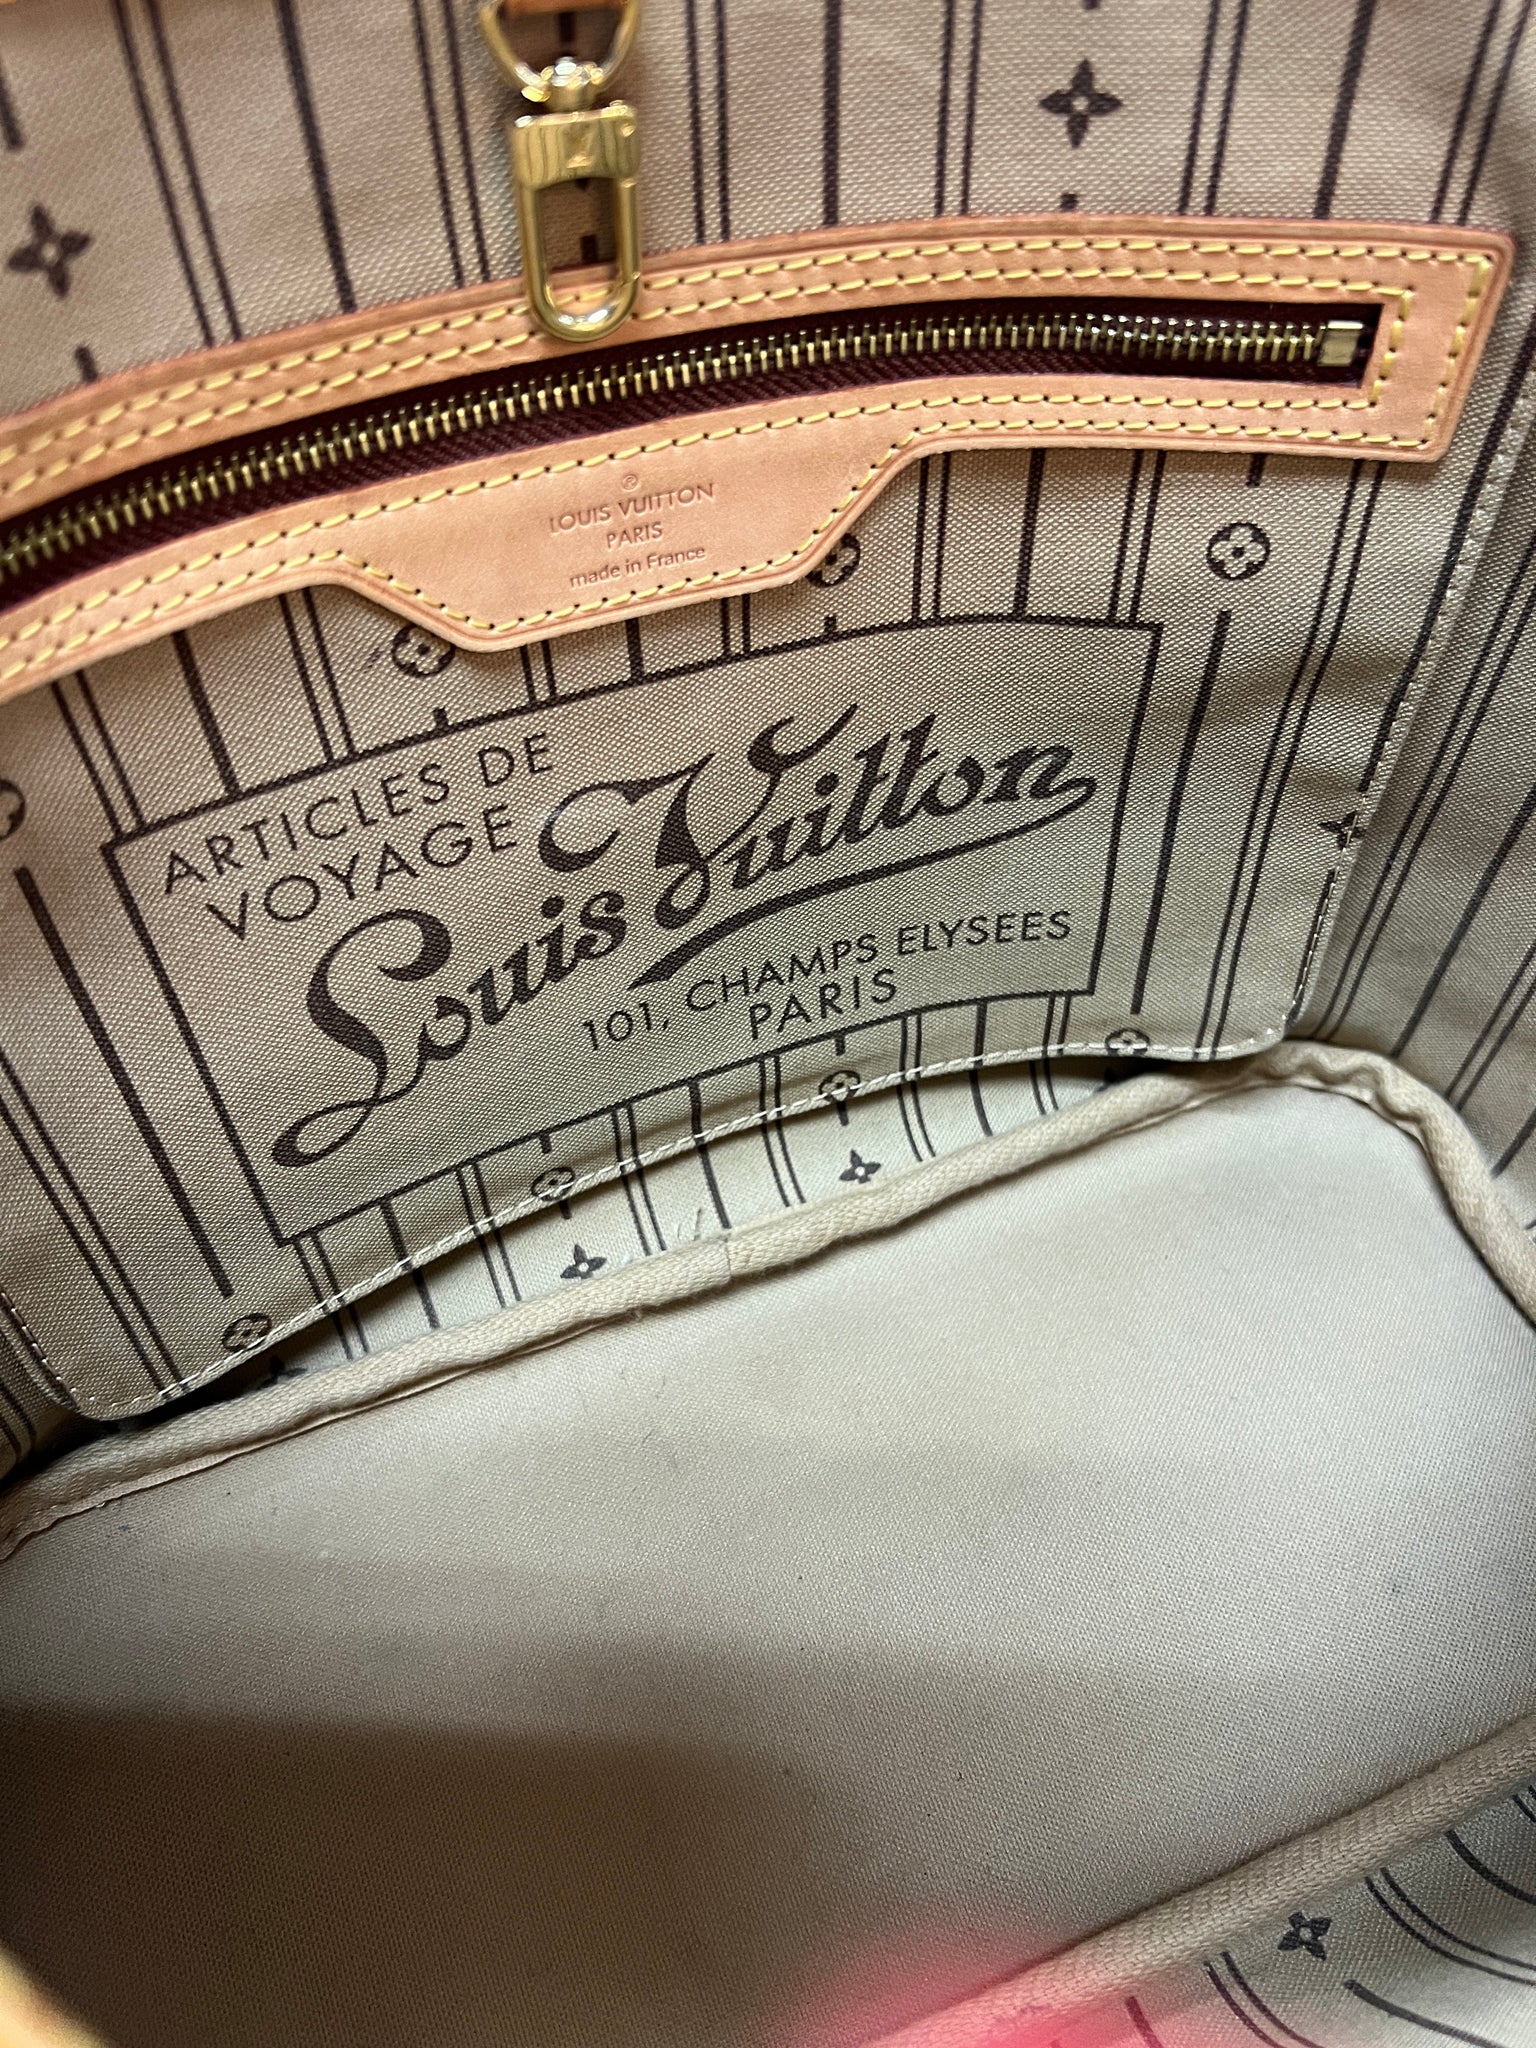 Louis Vuitton, Bags, Authentic Vintage Louis Vuitton Never Full Pm